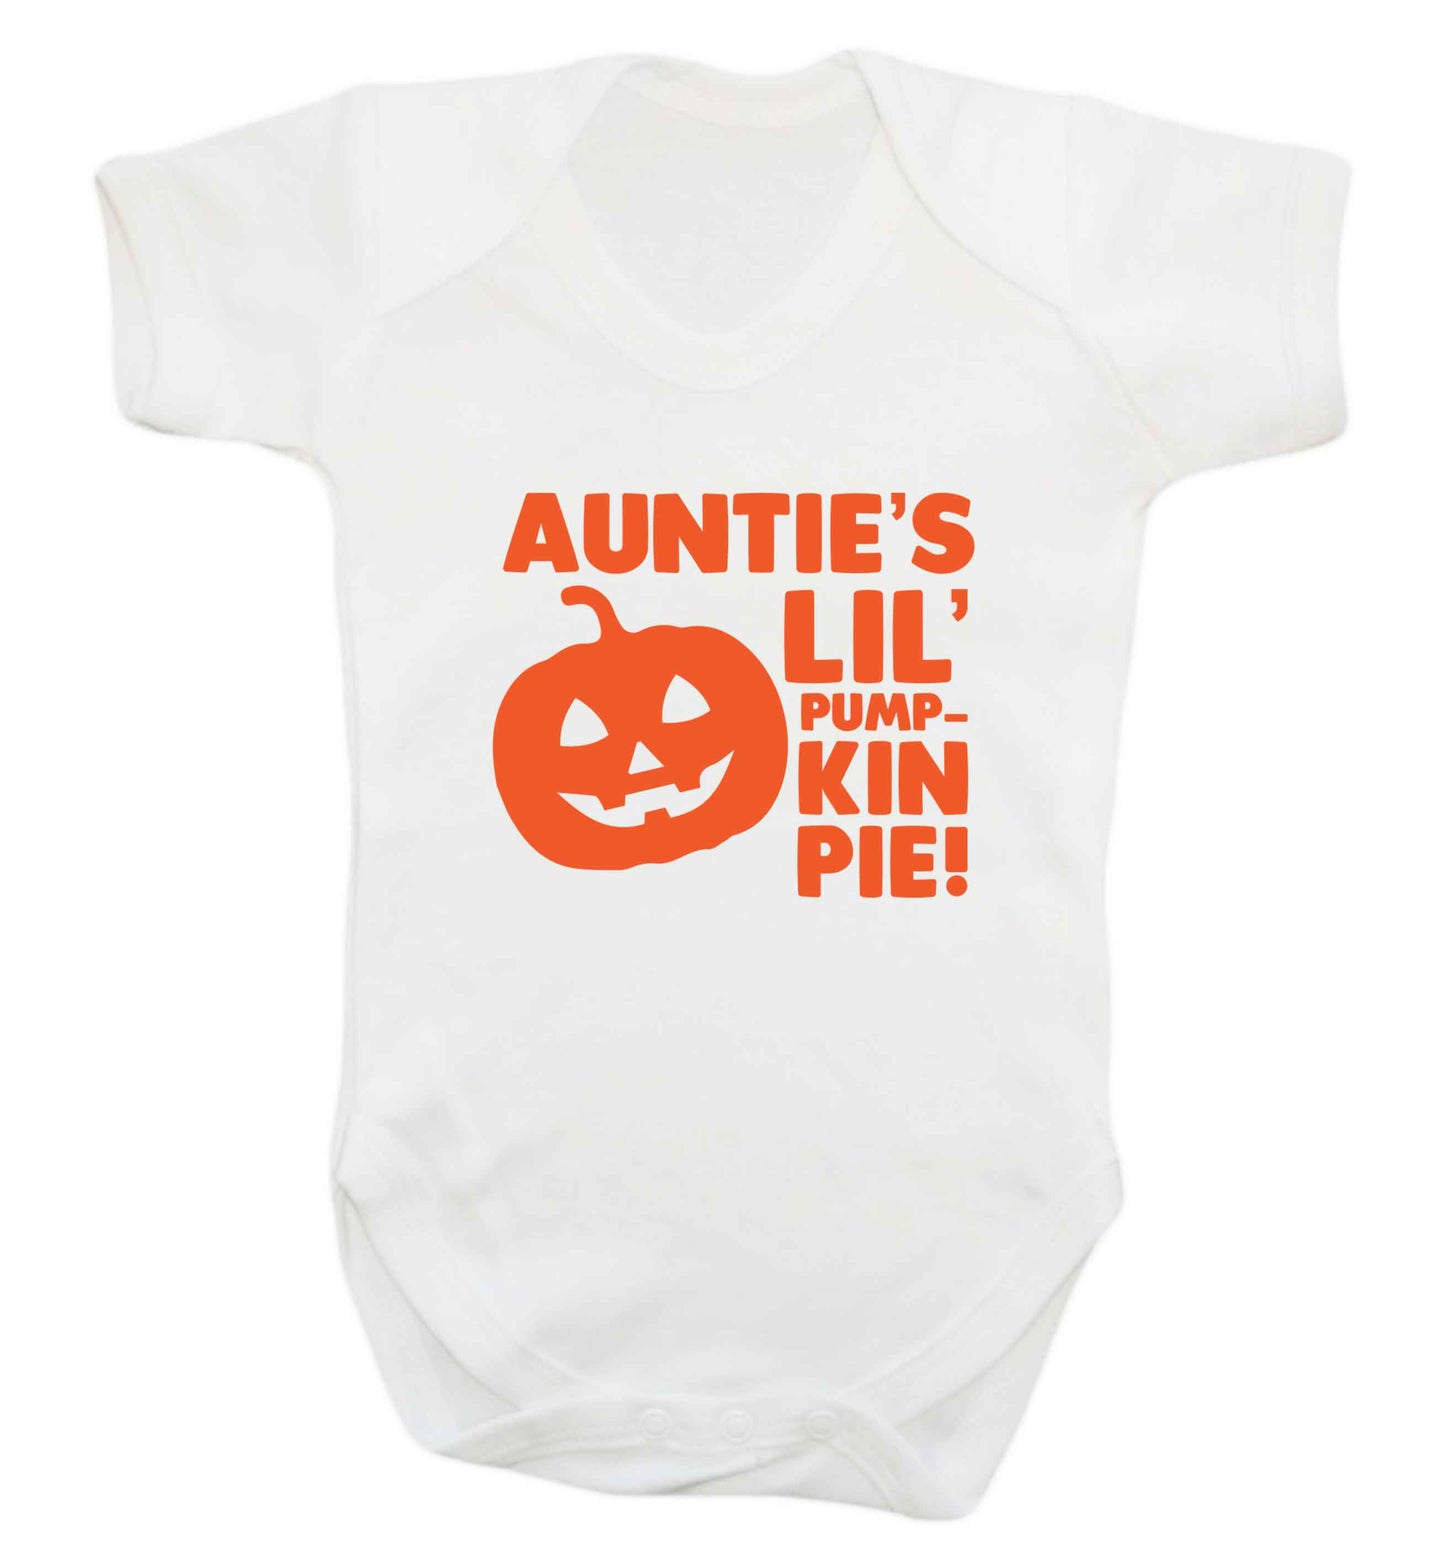 Auntie's lil' pumpkin pie baby vest white 18-24 months